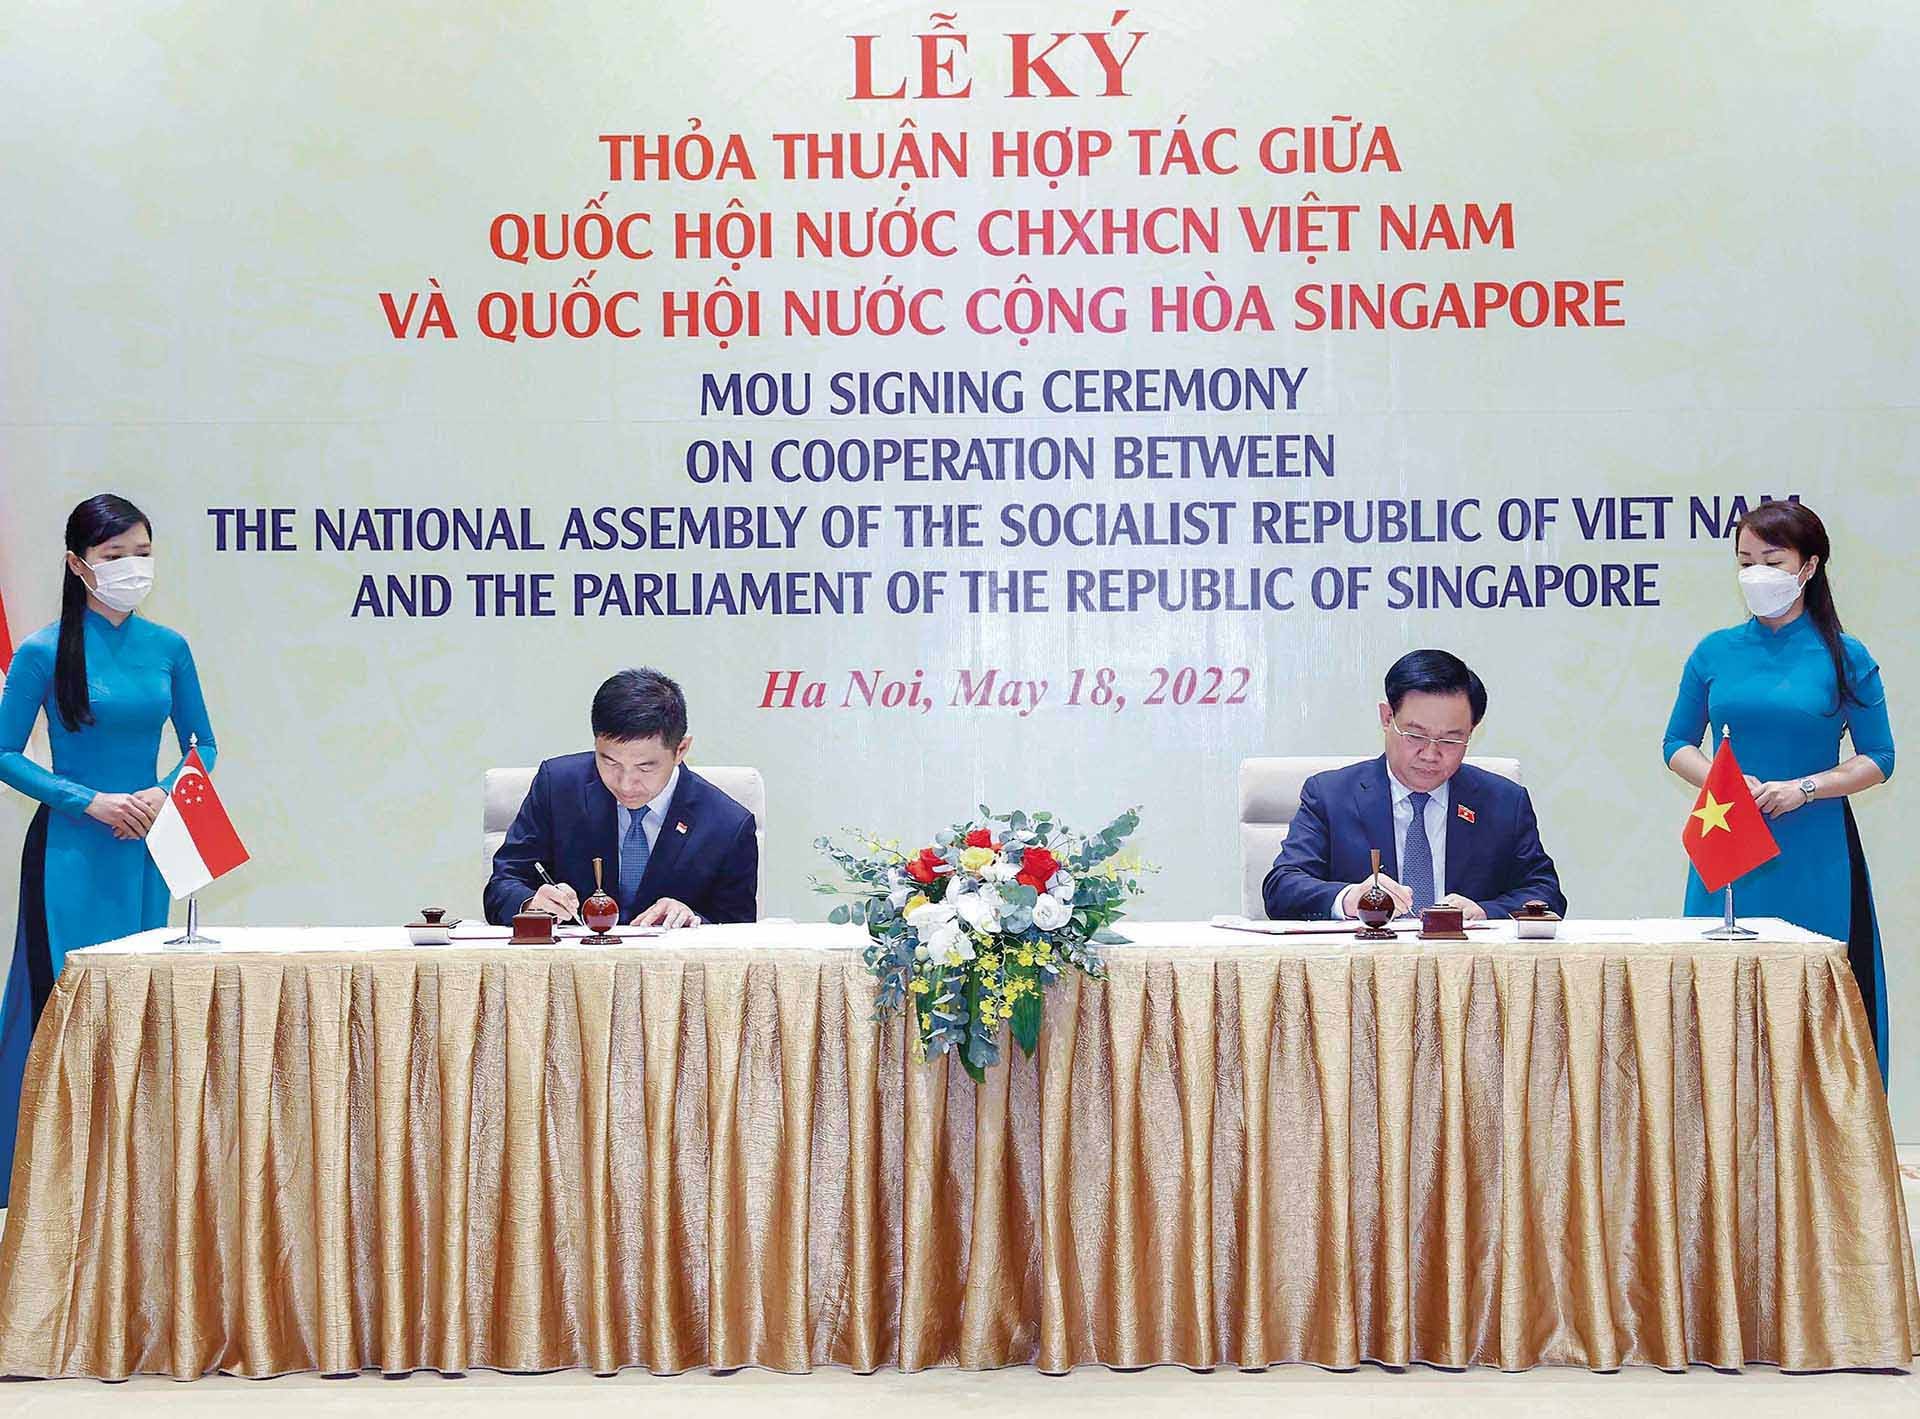 Chủ tịch Quốc hội Vương Đình Huệ và Chủ tịch Quốc hội Singapore Tan Chuan-Jin cùng thực hiện Lễ ký Thỏa thuận hợp tác giữa hai Quốc hội Việt Nam và Singapore, ngày 18/5/2022, tại Nhà Quốc hội.